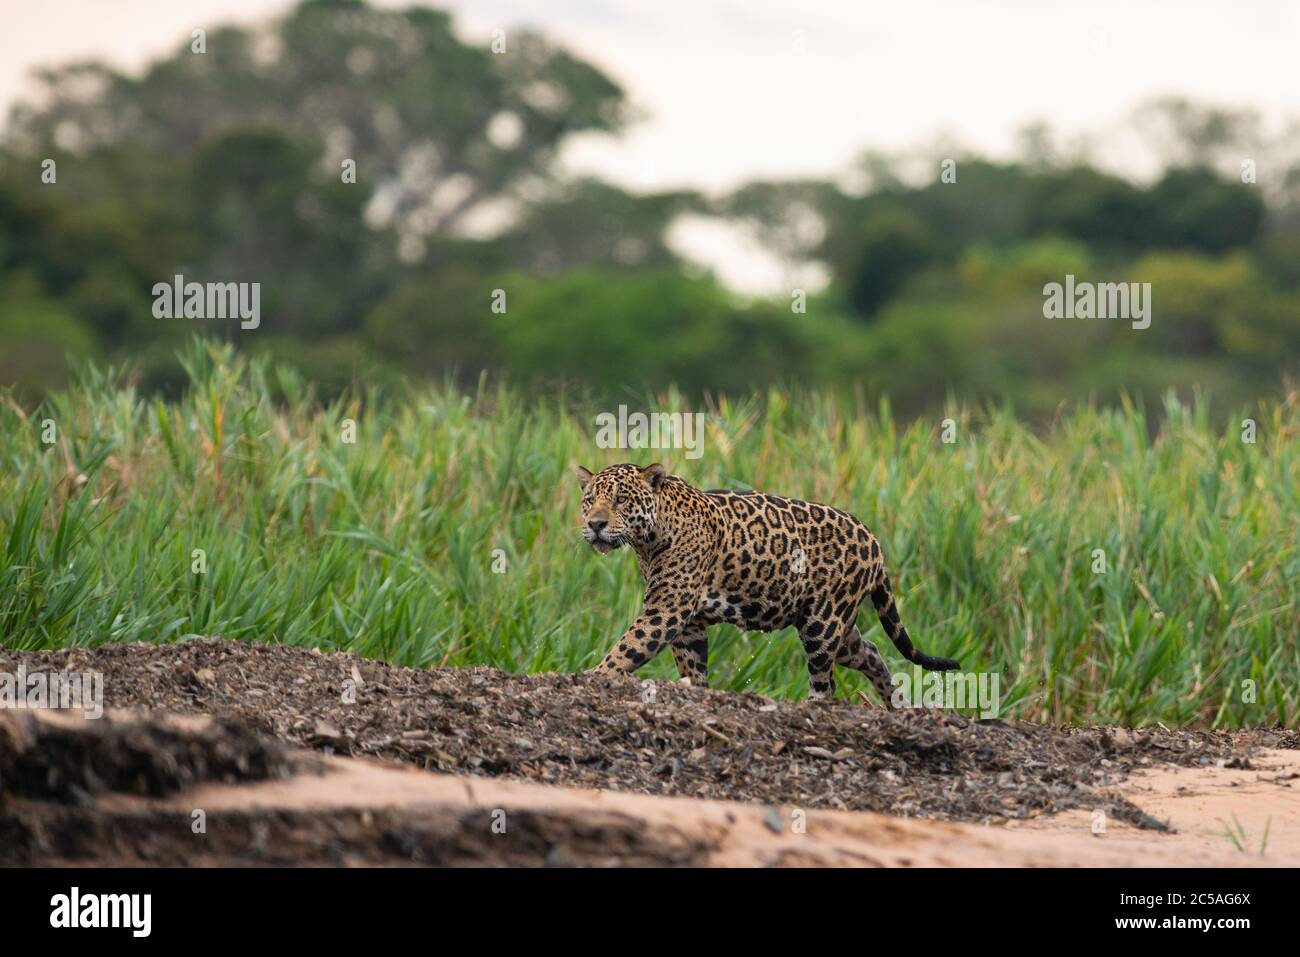 A wild Jaguar (Panthera onca) from North Pantanal, Brazil Stock Photo